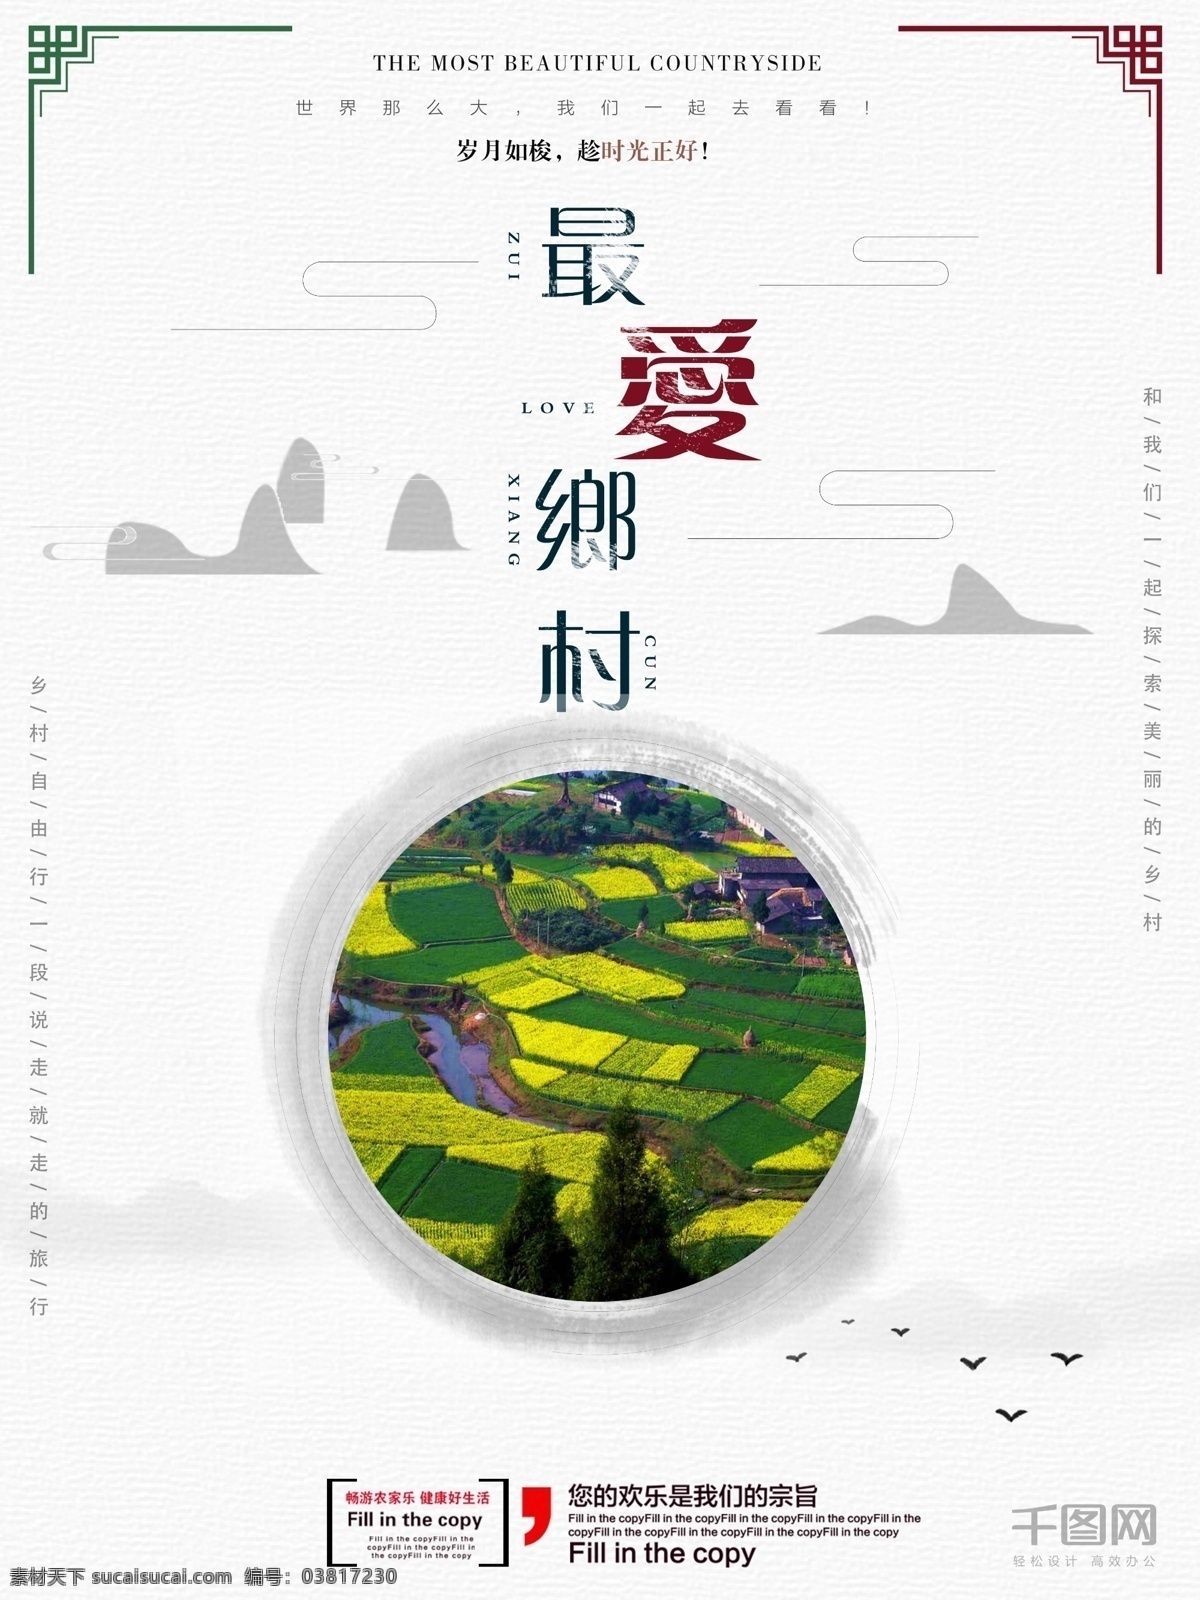 乡村 旅游 海报 旅行 美丽乡村 醉美乡村海报 文化中国传统 地域风格海报 旅游海报 乡村旅行